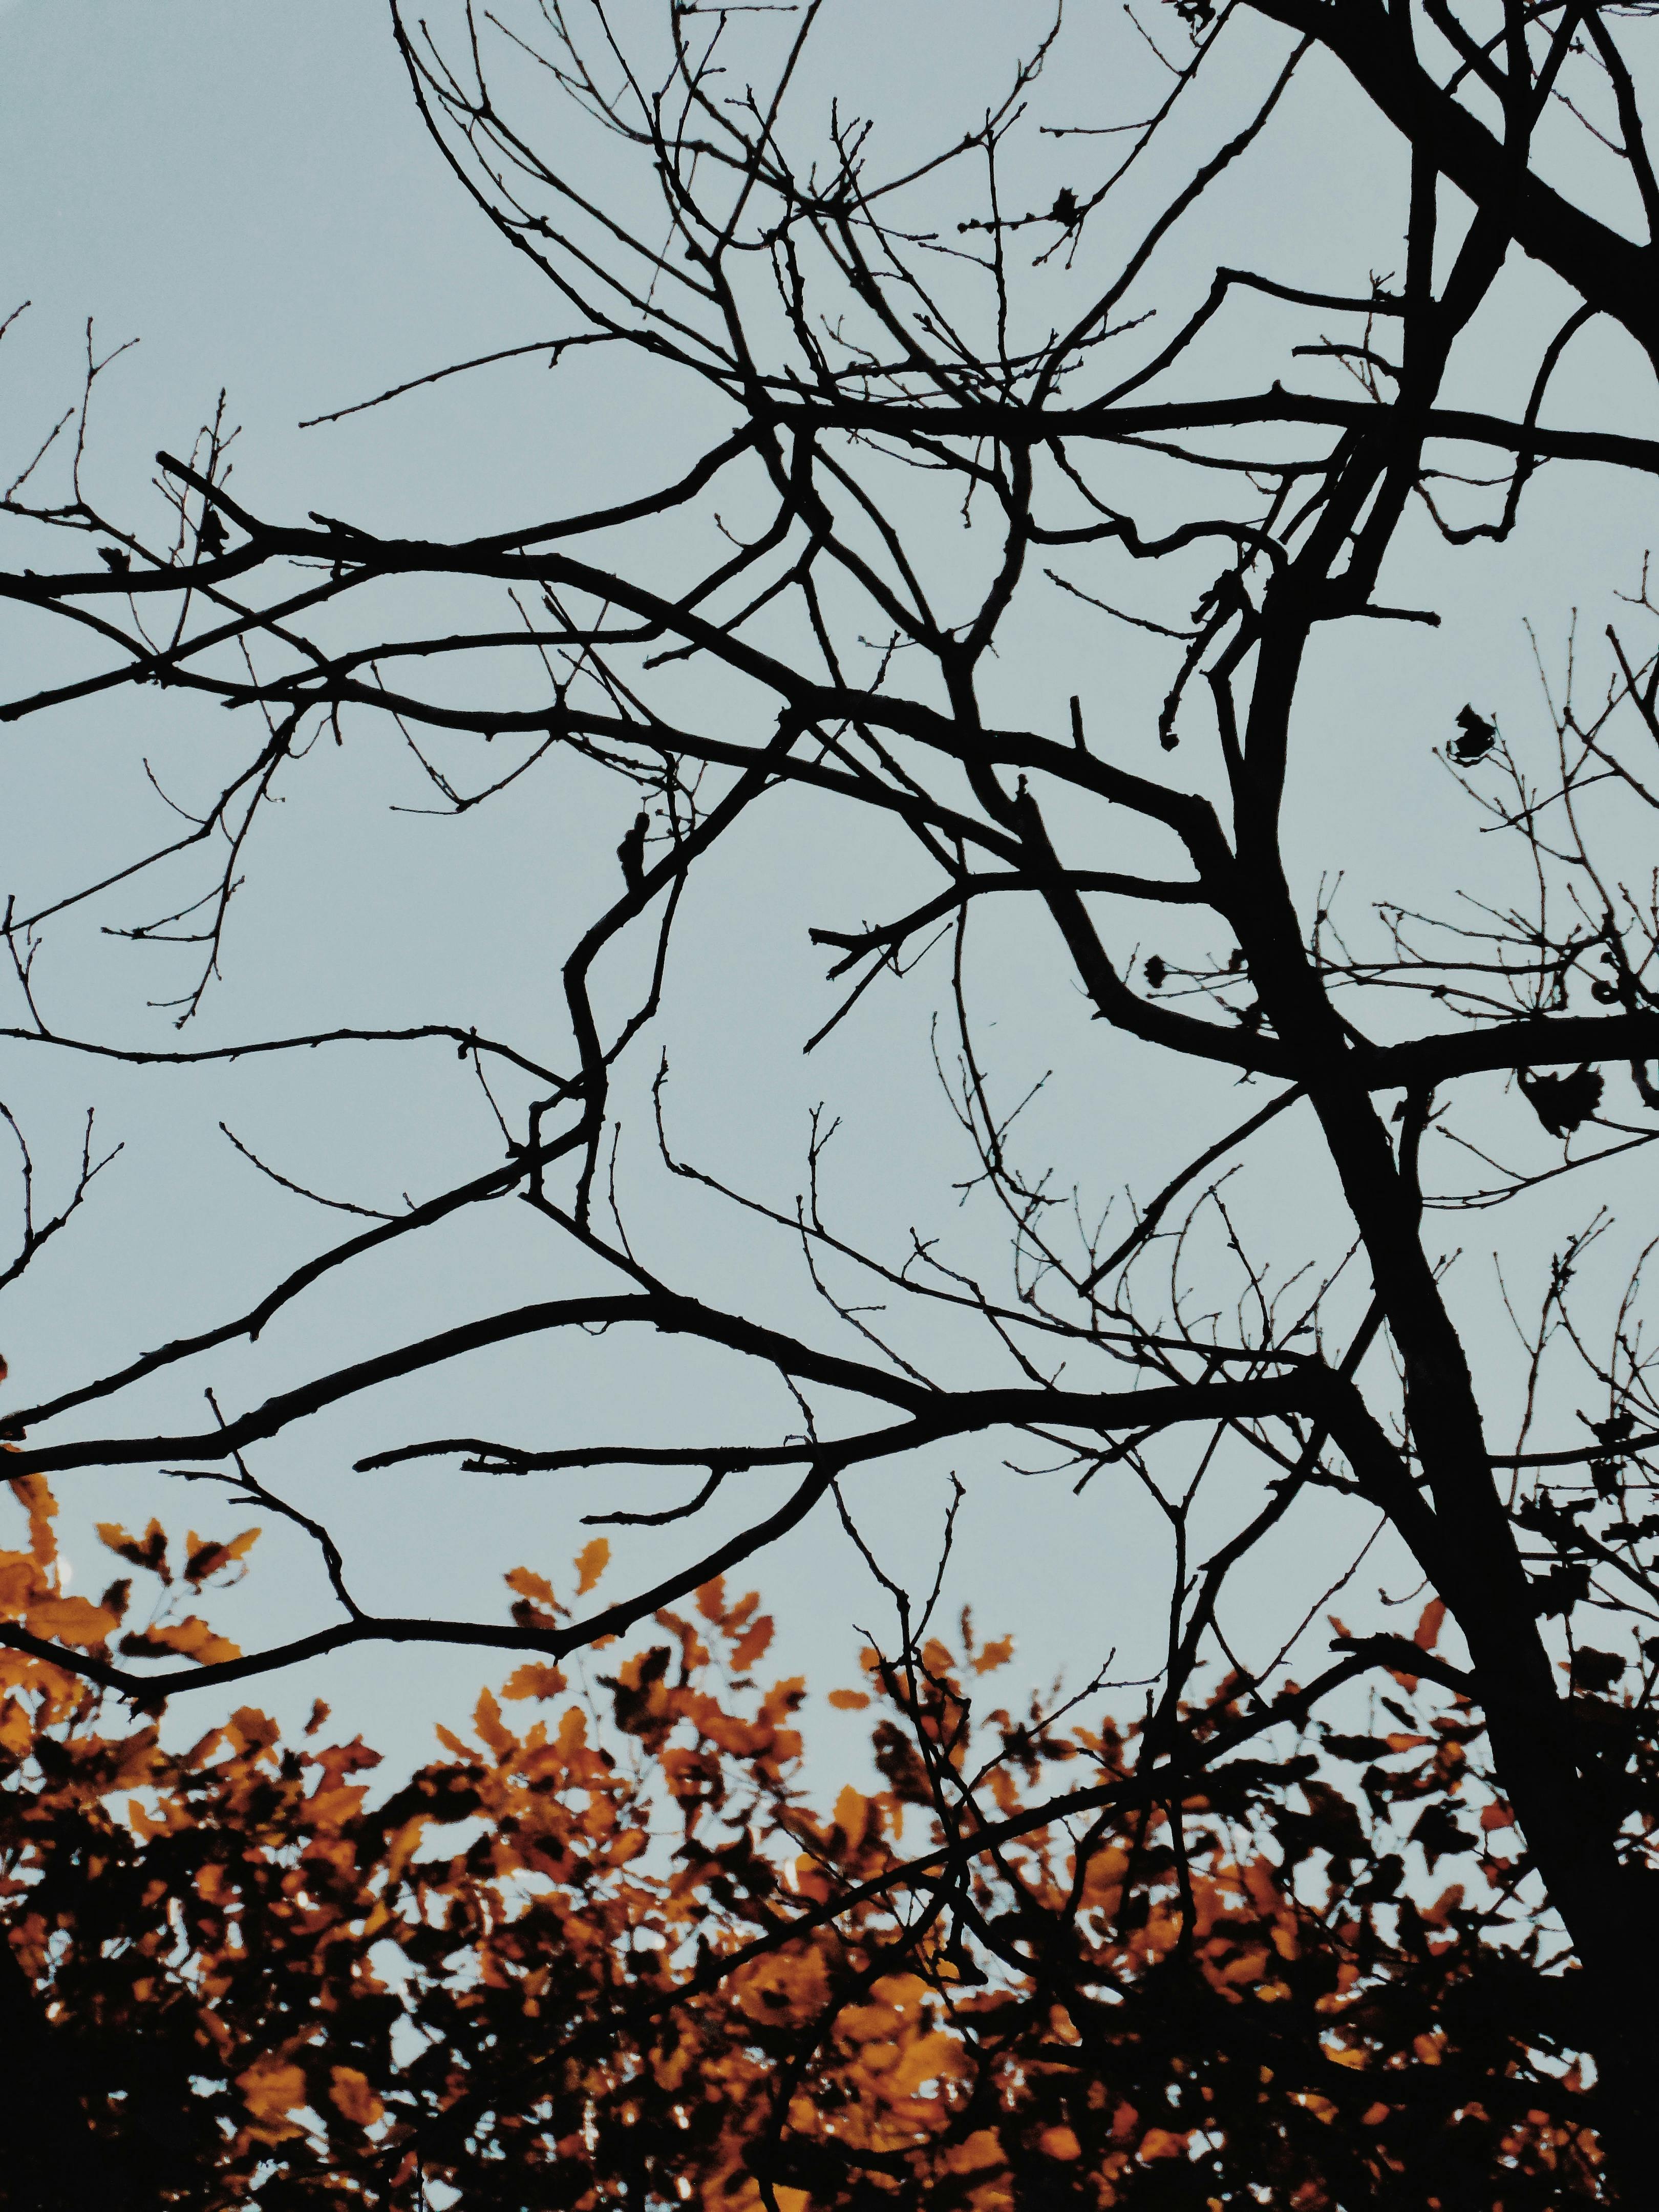  Baum Hintergrundbild 3240x4320. Kostenloses Foto zum Thema: äste, baum, klarer himmel, landschaft, mobile wallpaper, natur, vertikaler schuss